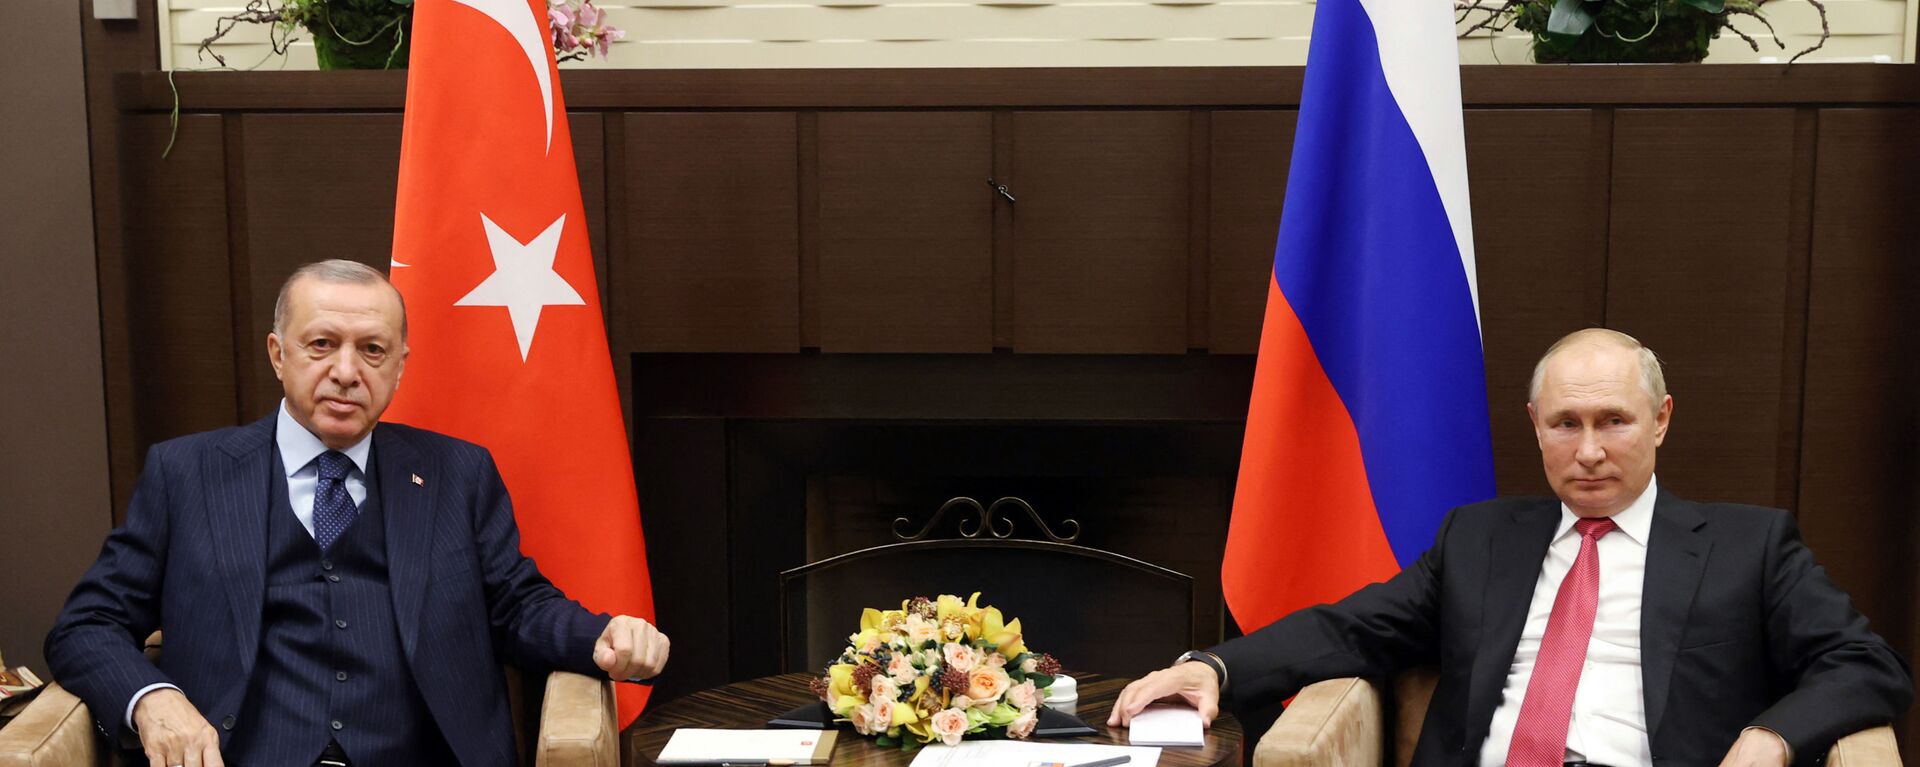 Tổng thống Nga Vladimir Putin tại cuộc gặp người đồng cấp Thổ Nhĩ Kỳ Tayyip Erdogan ở Sochi - Sputnik Việt Nam, 1920, 30.09.2022